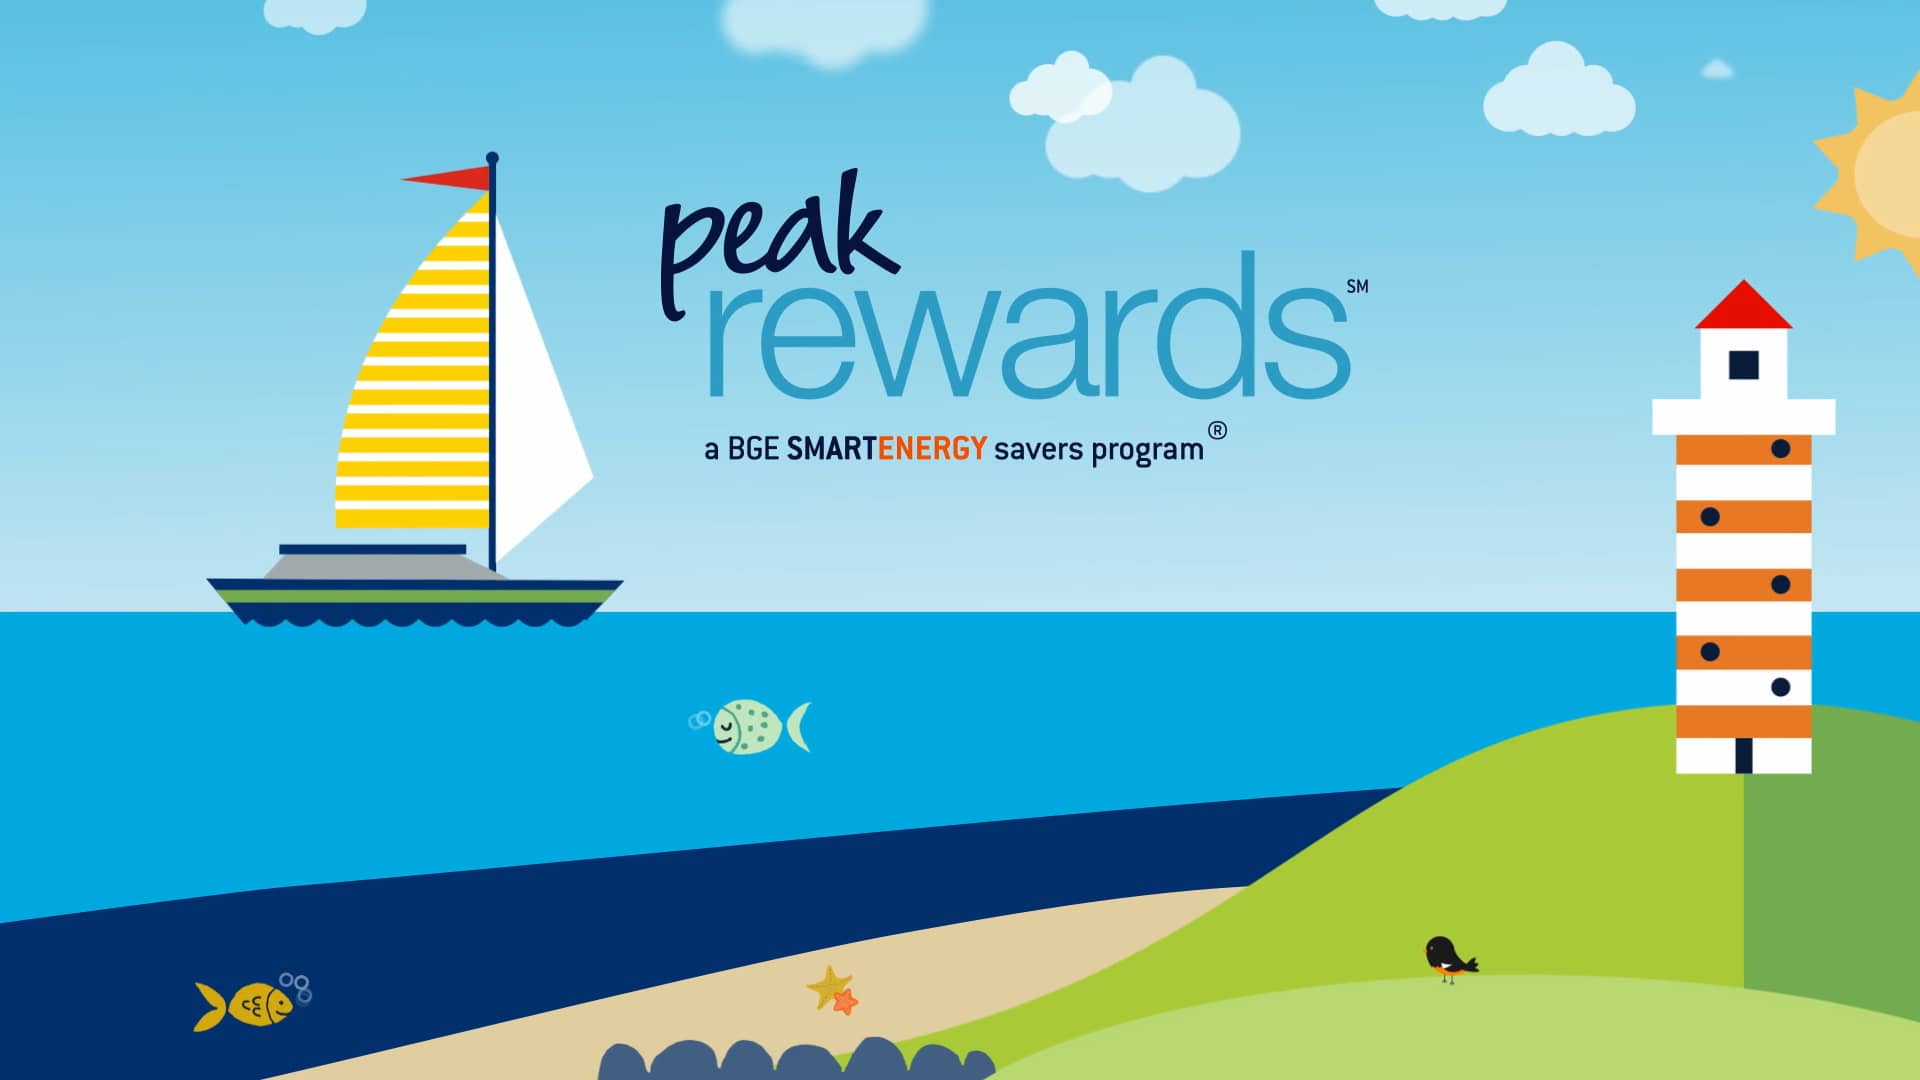 bge-peak-rewards-on-vimeo